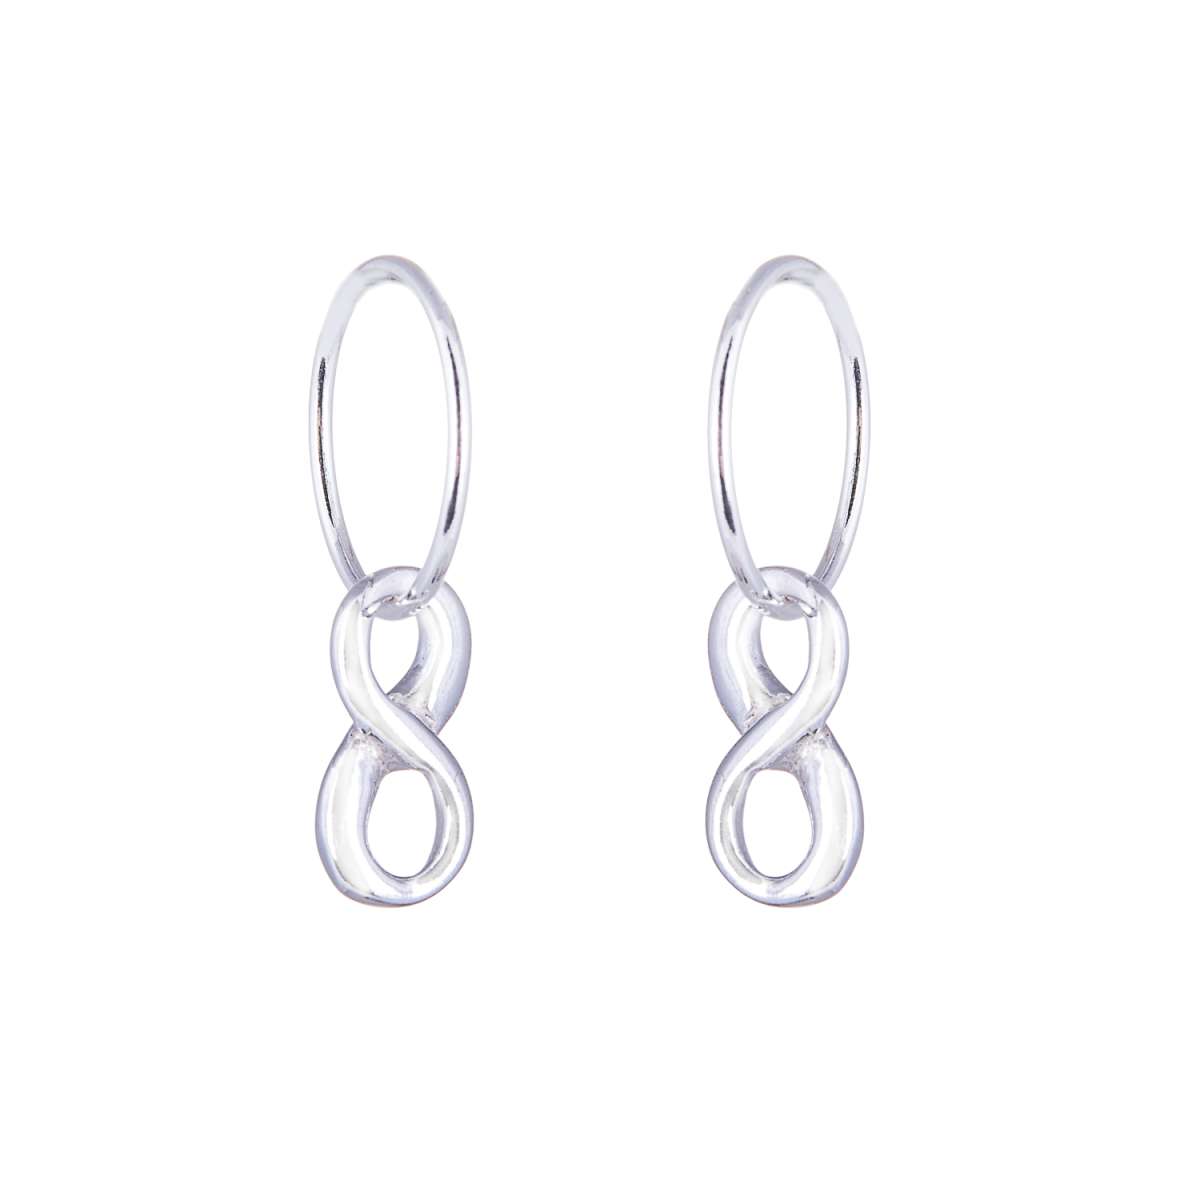 Sterling Silver Infinity Charm Hoop 12mm Earrings